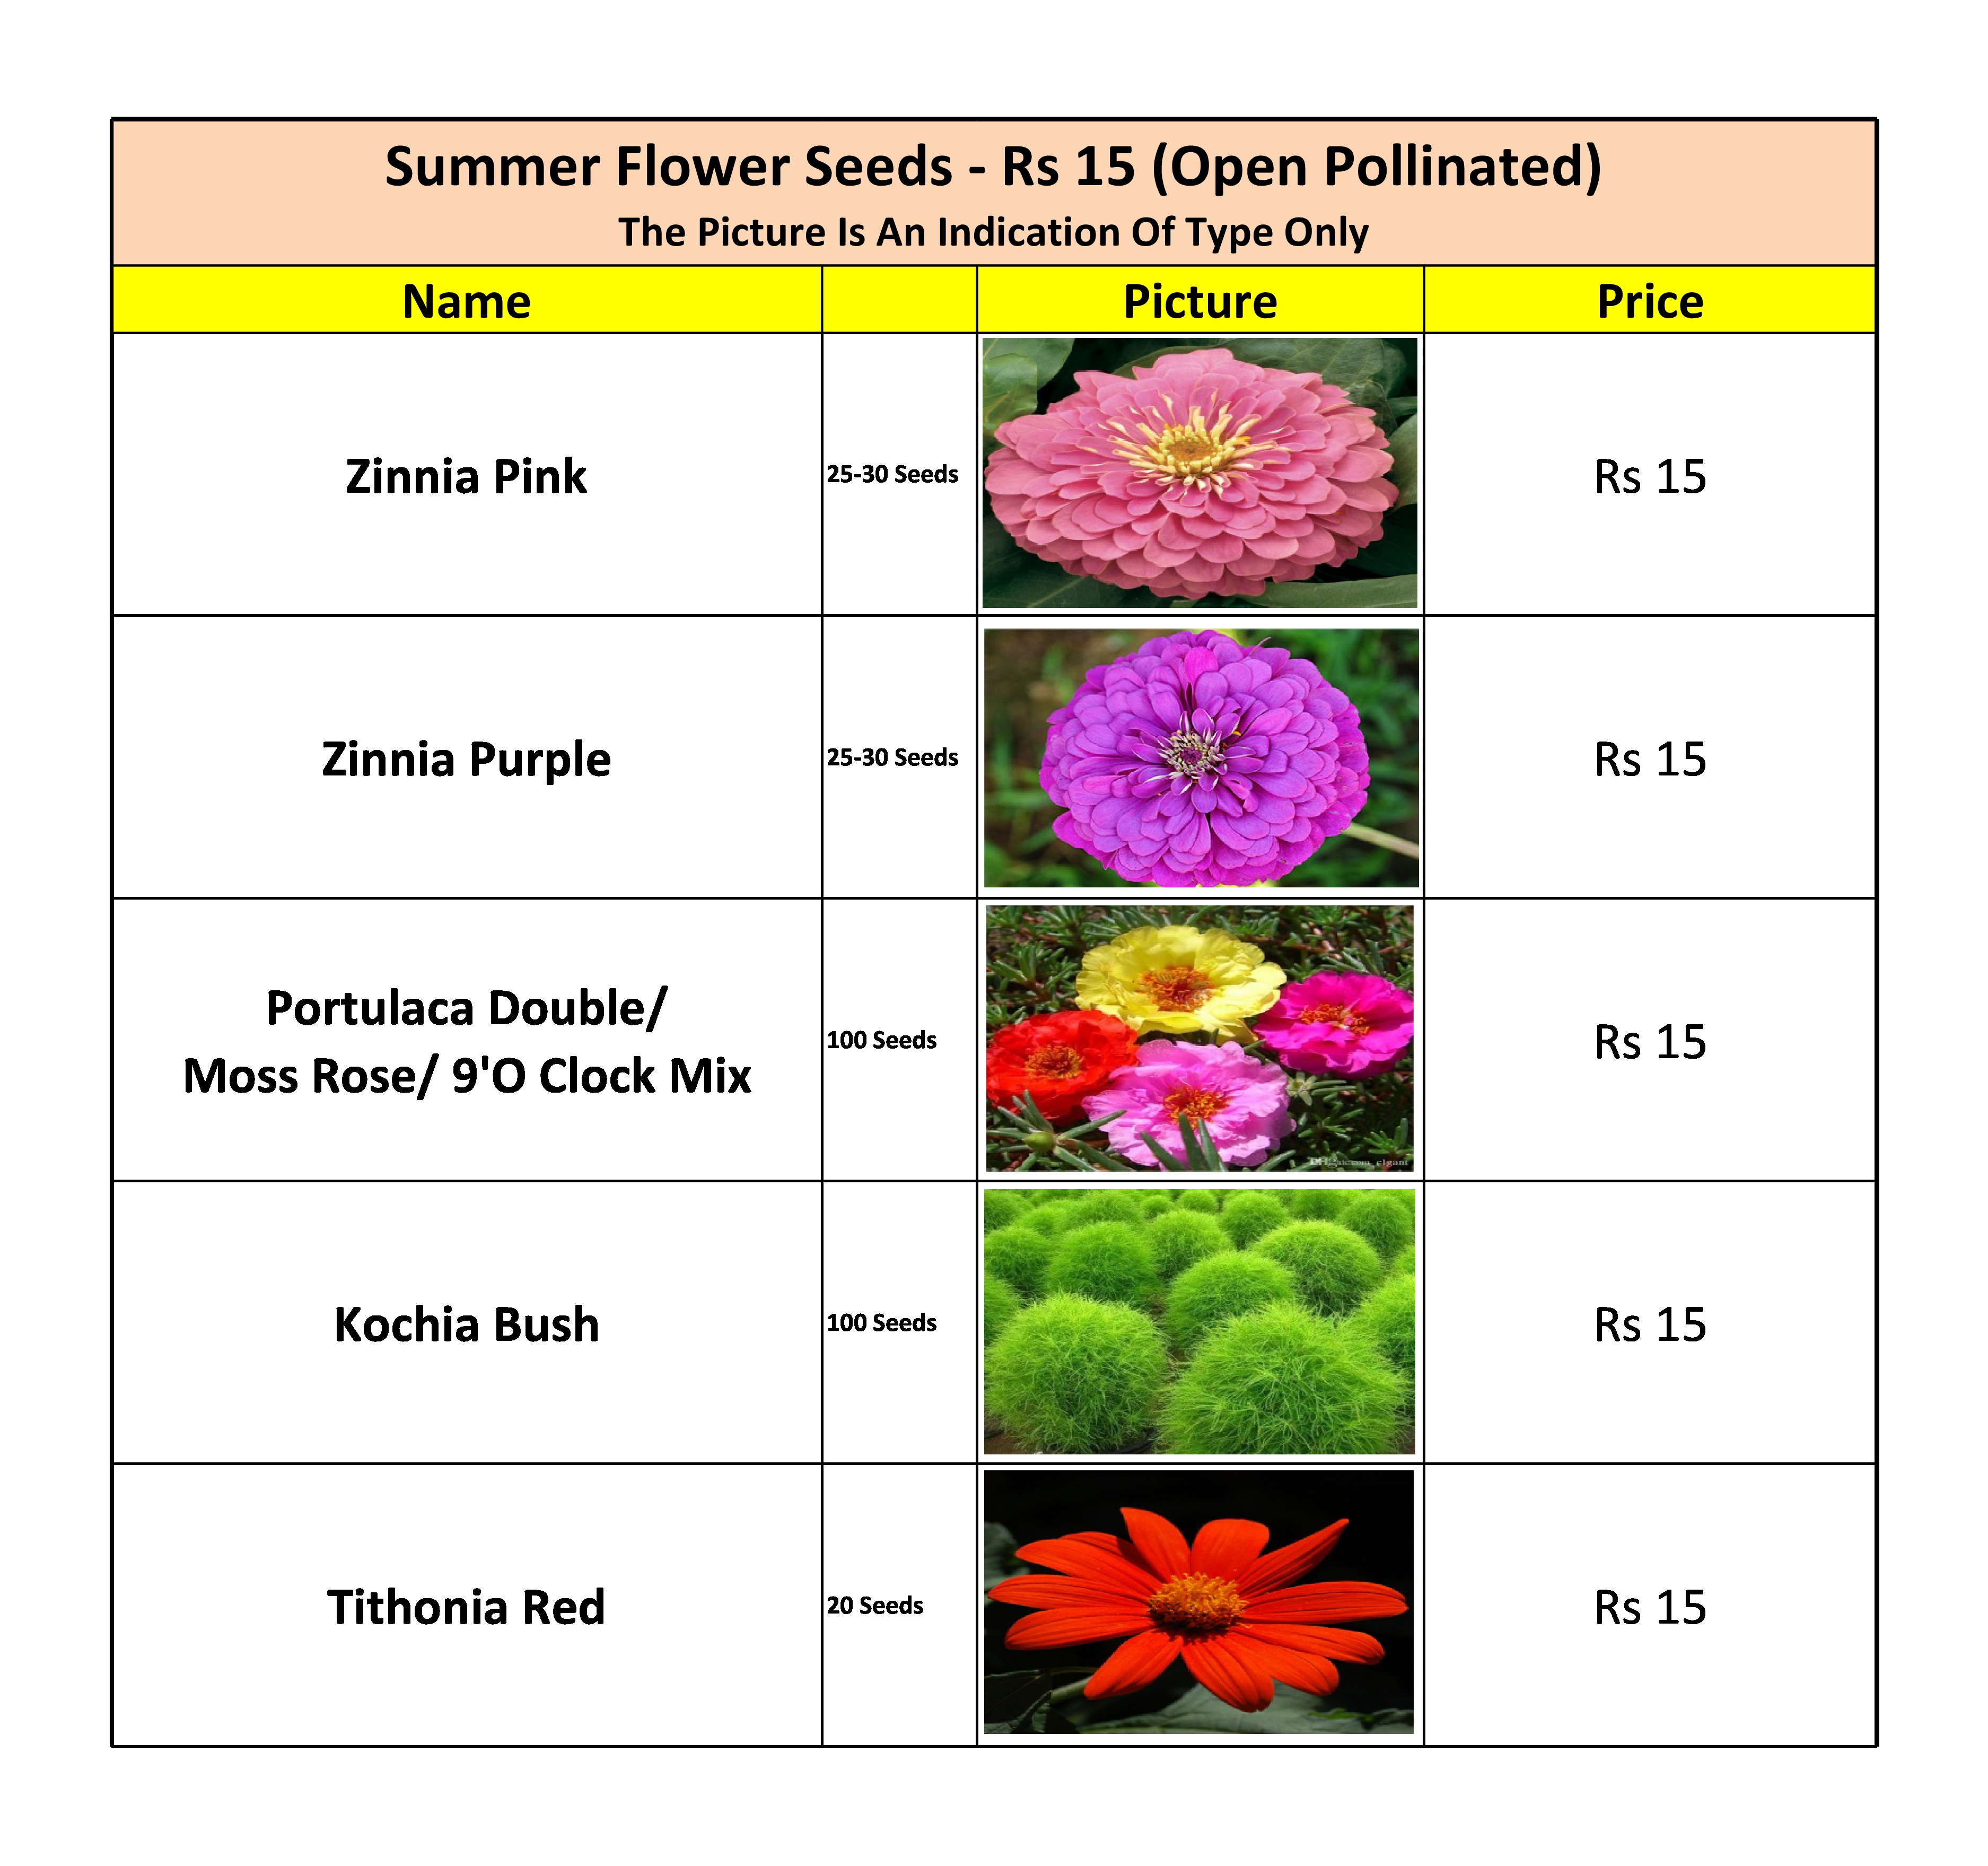 Summer Flower Seeds - Rs 15